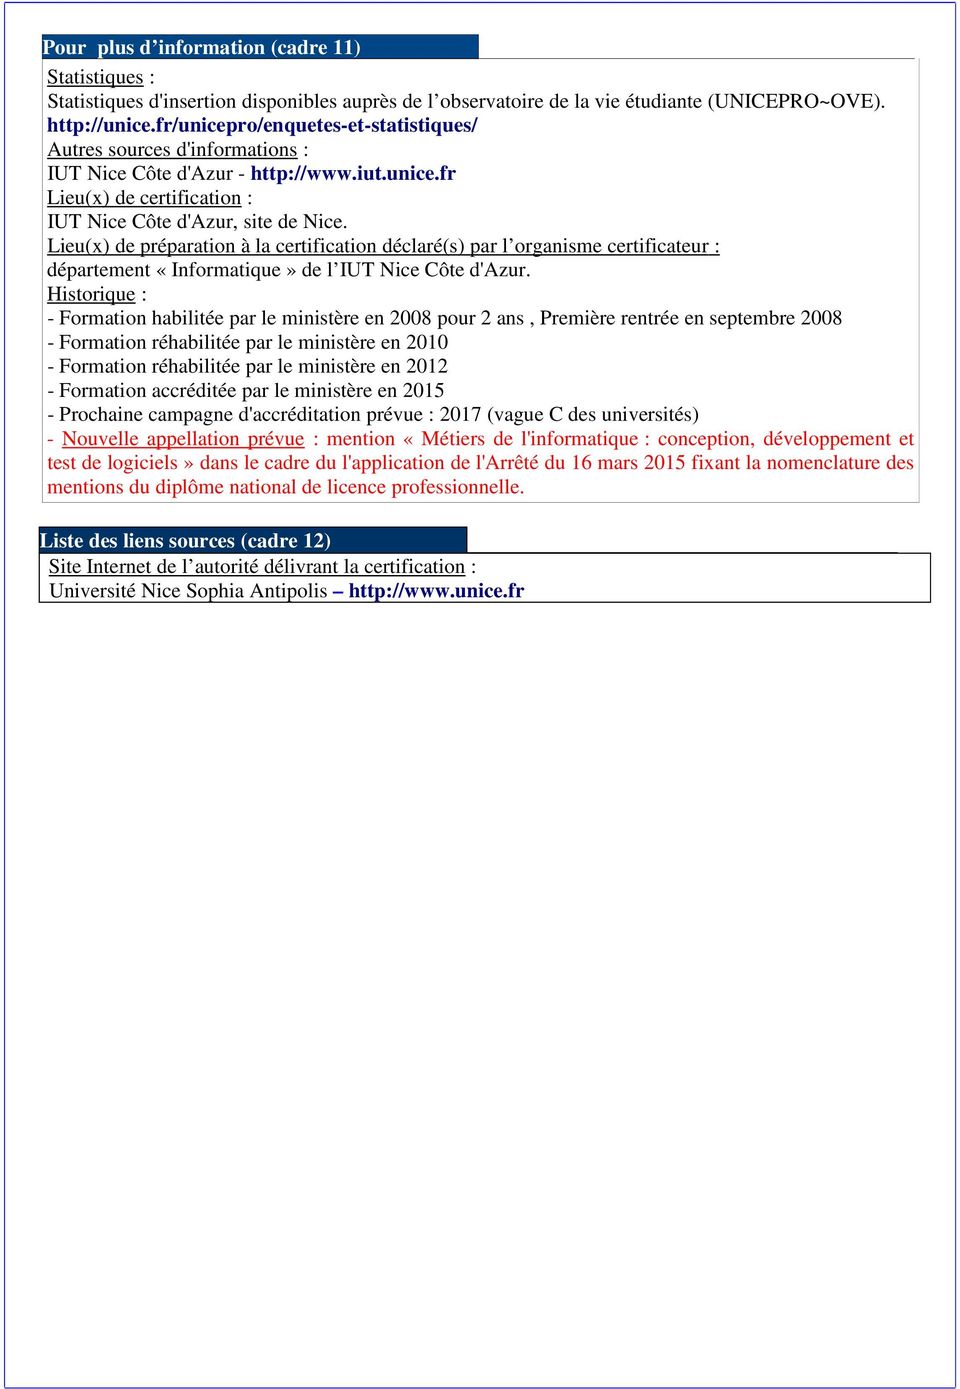 Lieu(x) de préparation à la certification déclaré(s) par l organisme certificateur : département «Informatique» de l IUT Nice Côte d'azur.